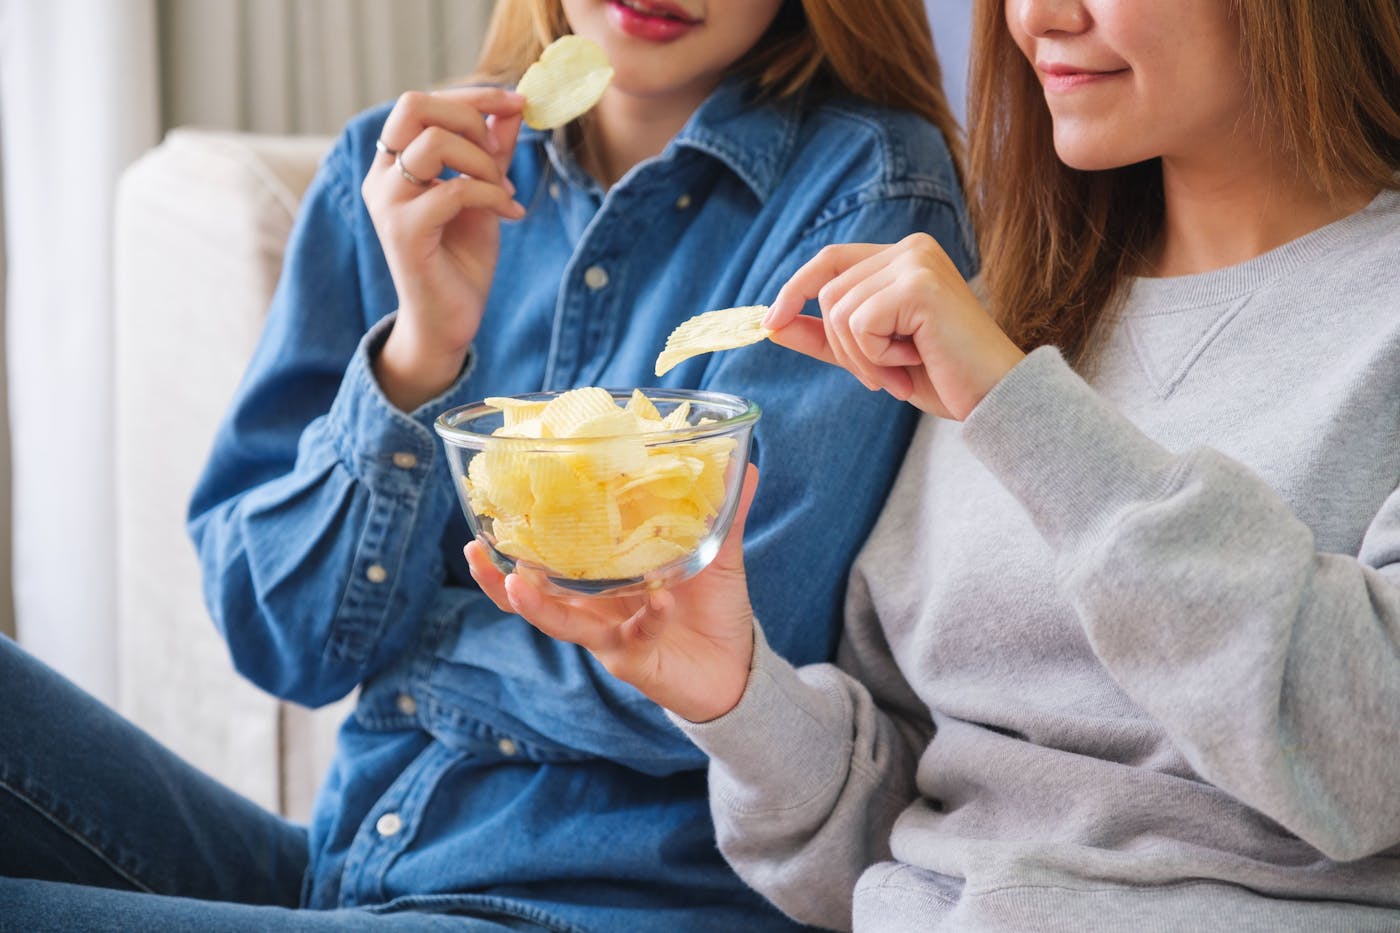 Zwei Frauen essen Chips aus einer Glasschüssel